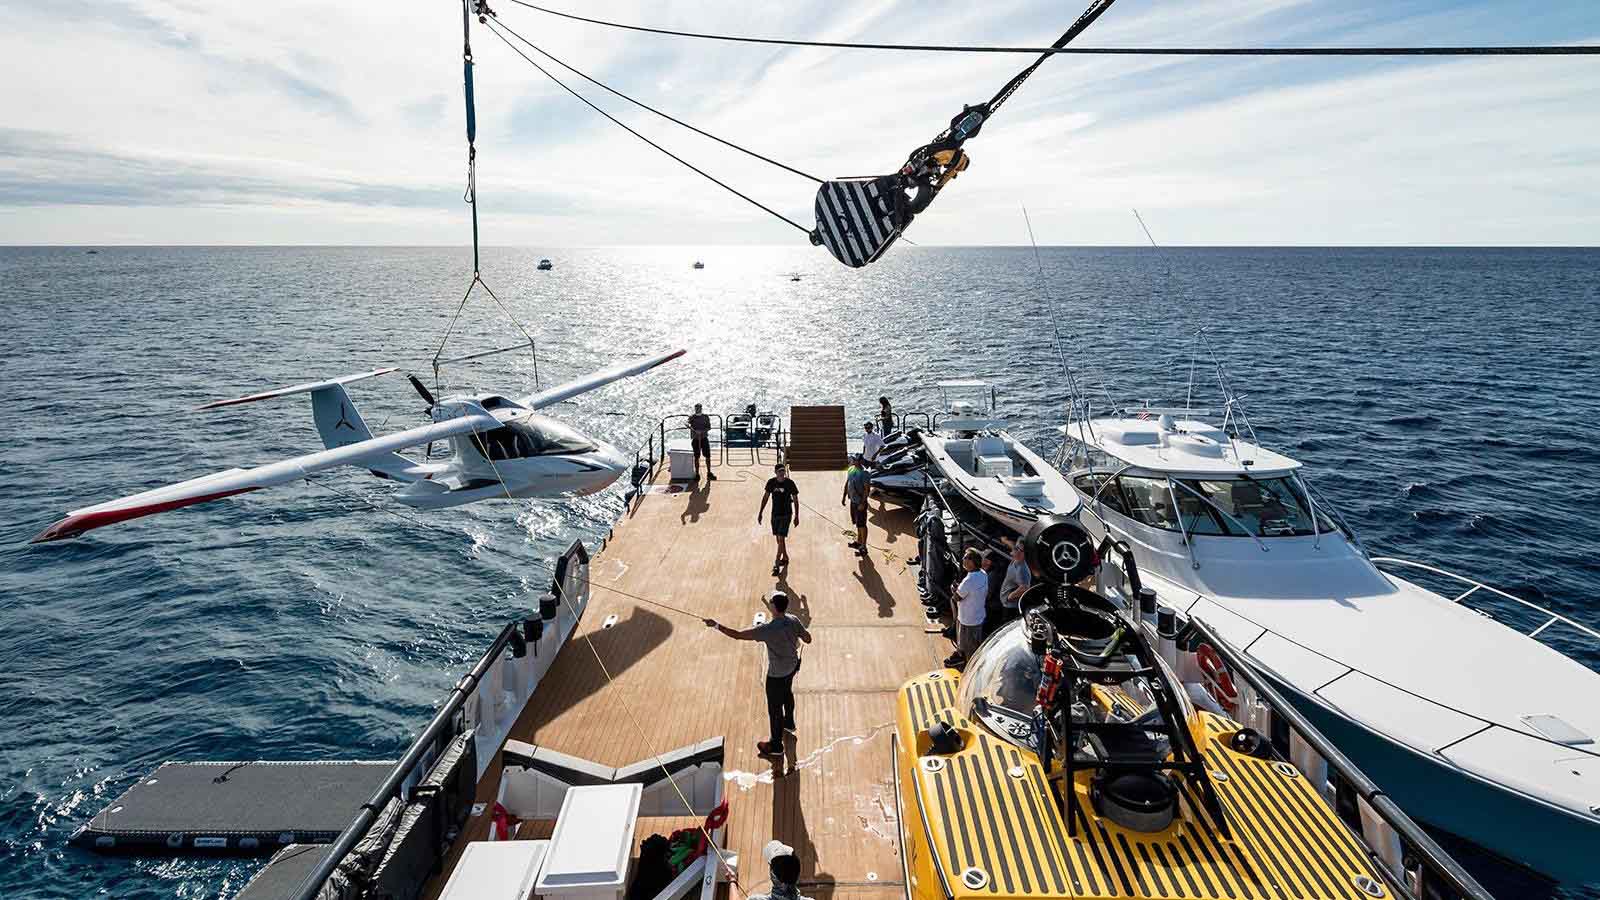 Damen entrega iate de apoio de 55 metros Power Play-boatshopping